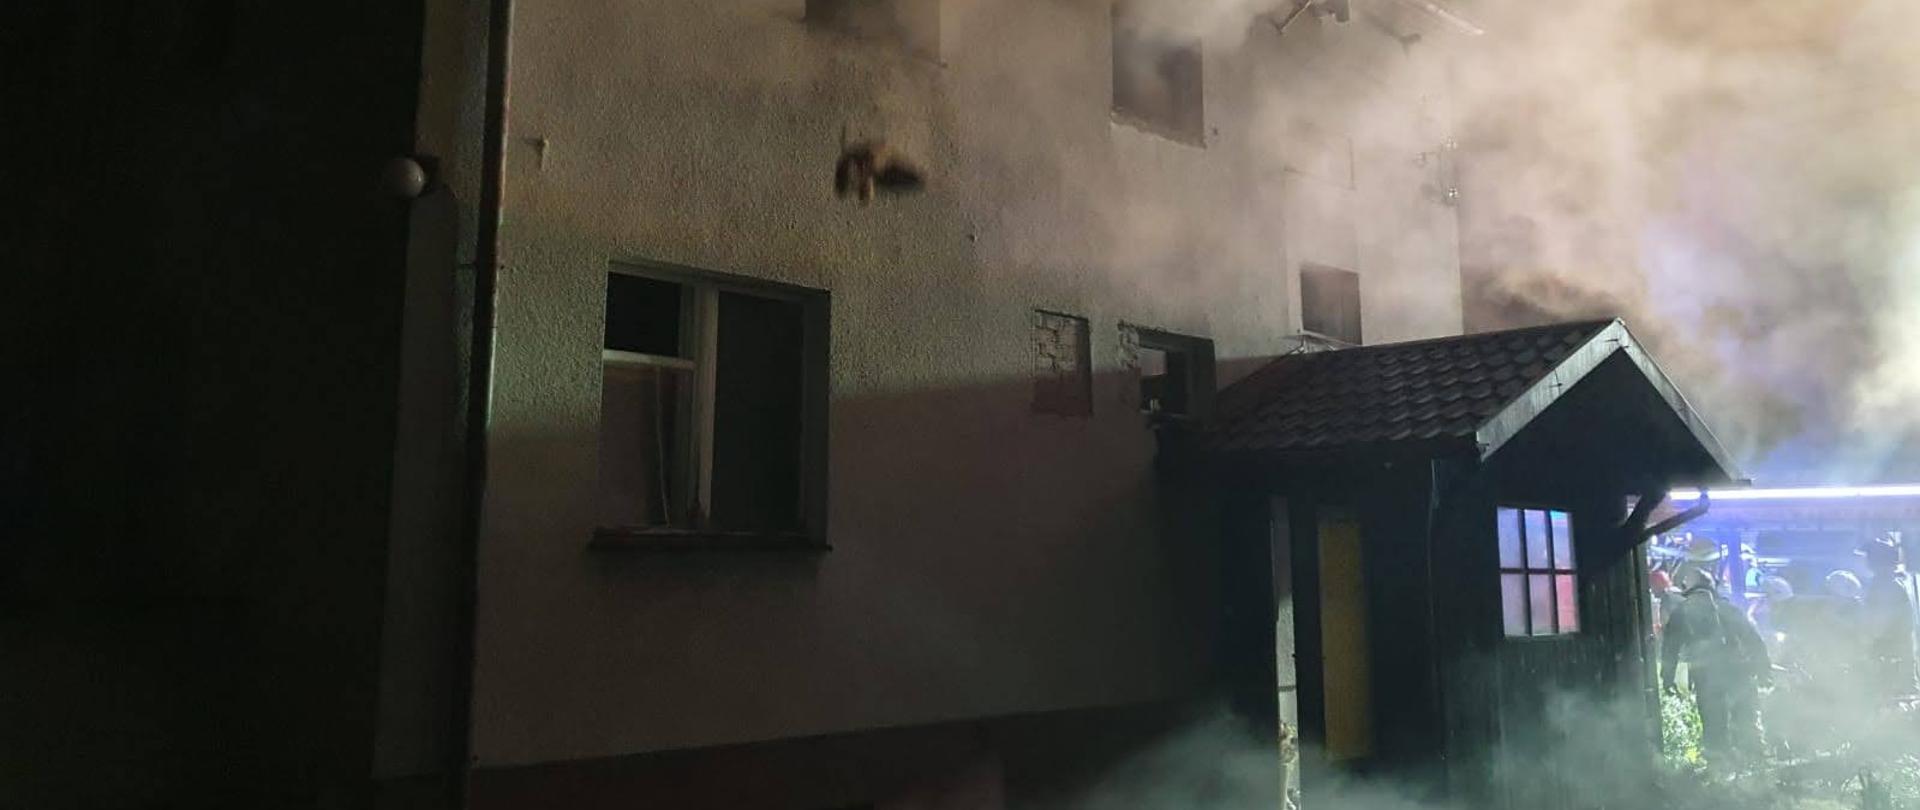 Pora nocna, widoczne kontury budynku mieszkalnego murowanego, z widocznym zadaszeniem nad wejściem. Budynek otoczony kłębami dymu. 